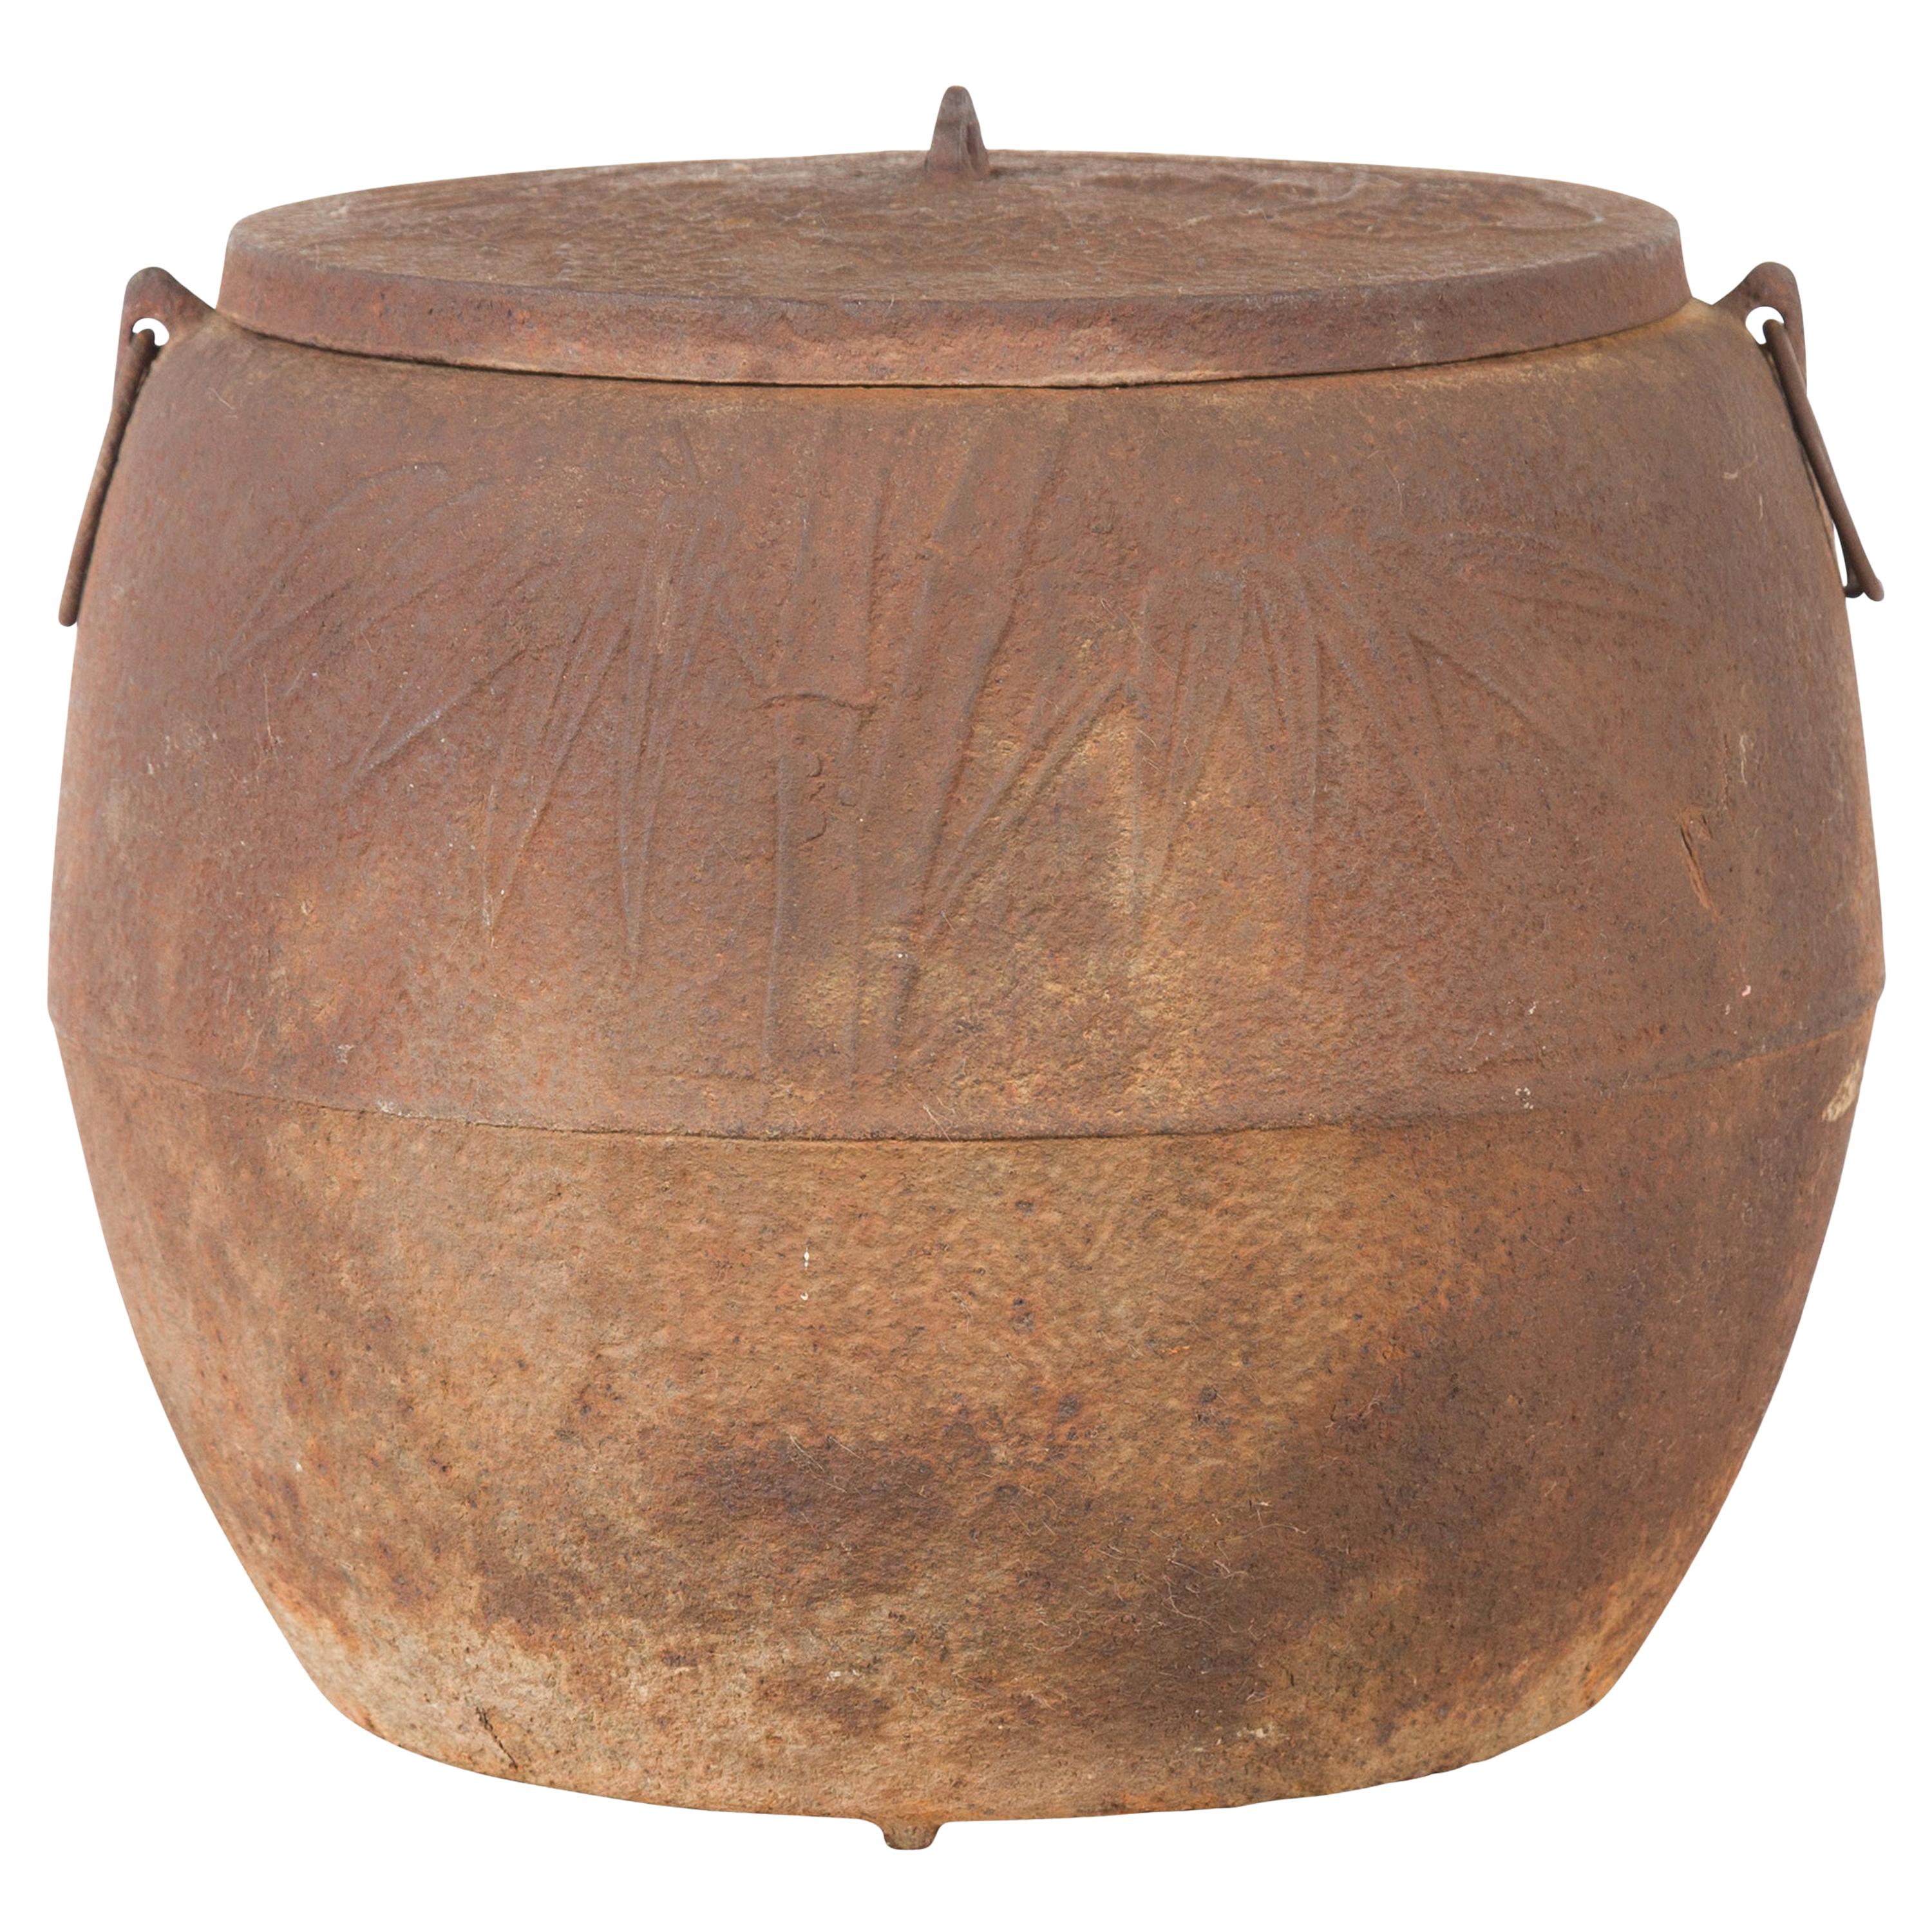 Pot de cuisine japonais en fer vieilli de la période Meiji des années 1900 avec motifs de feuillage